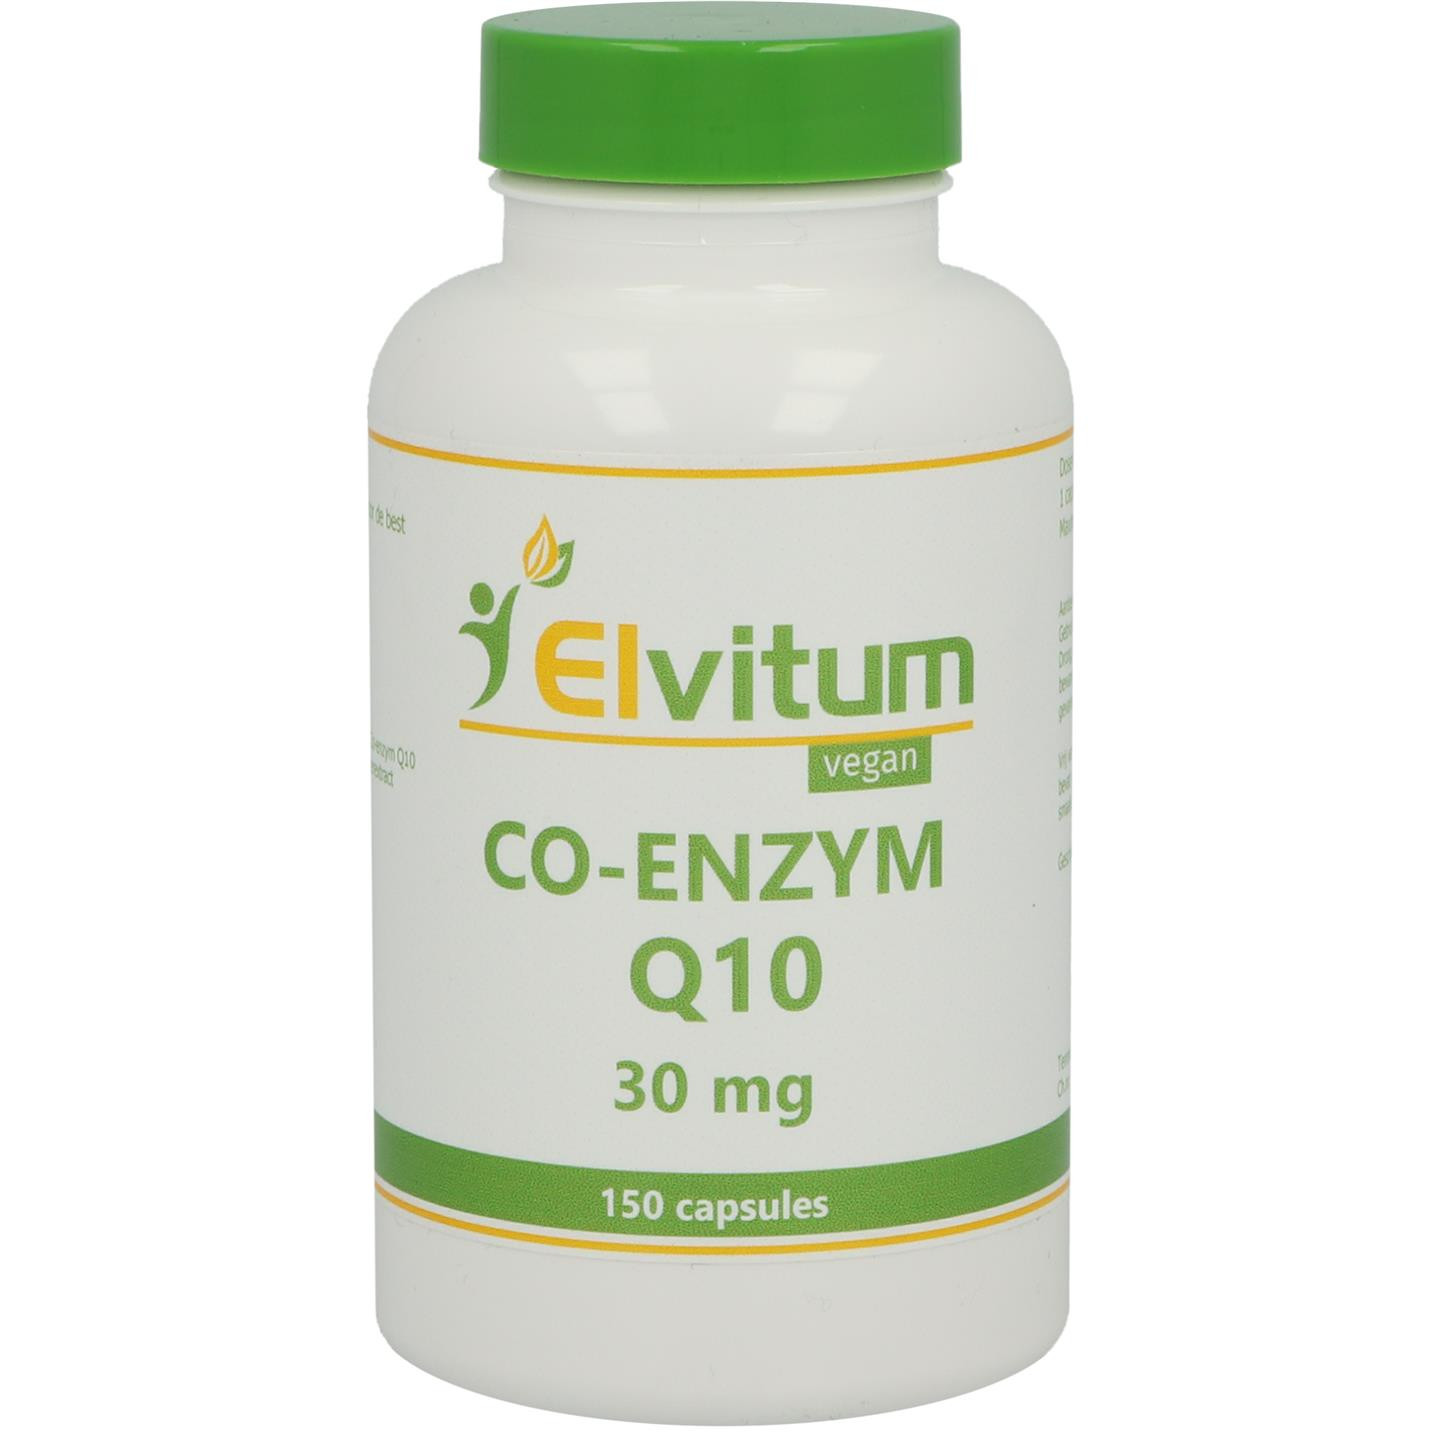 Co-enzym Q10 30 mg